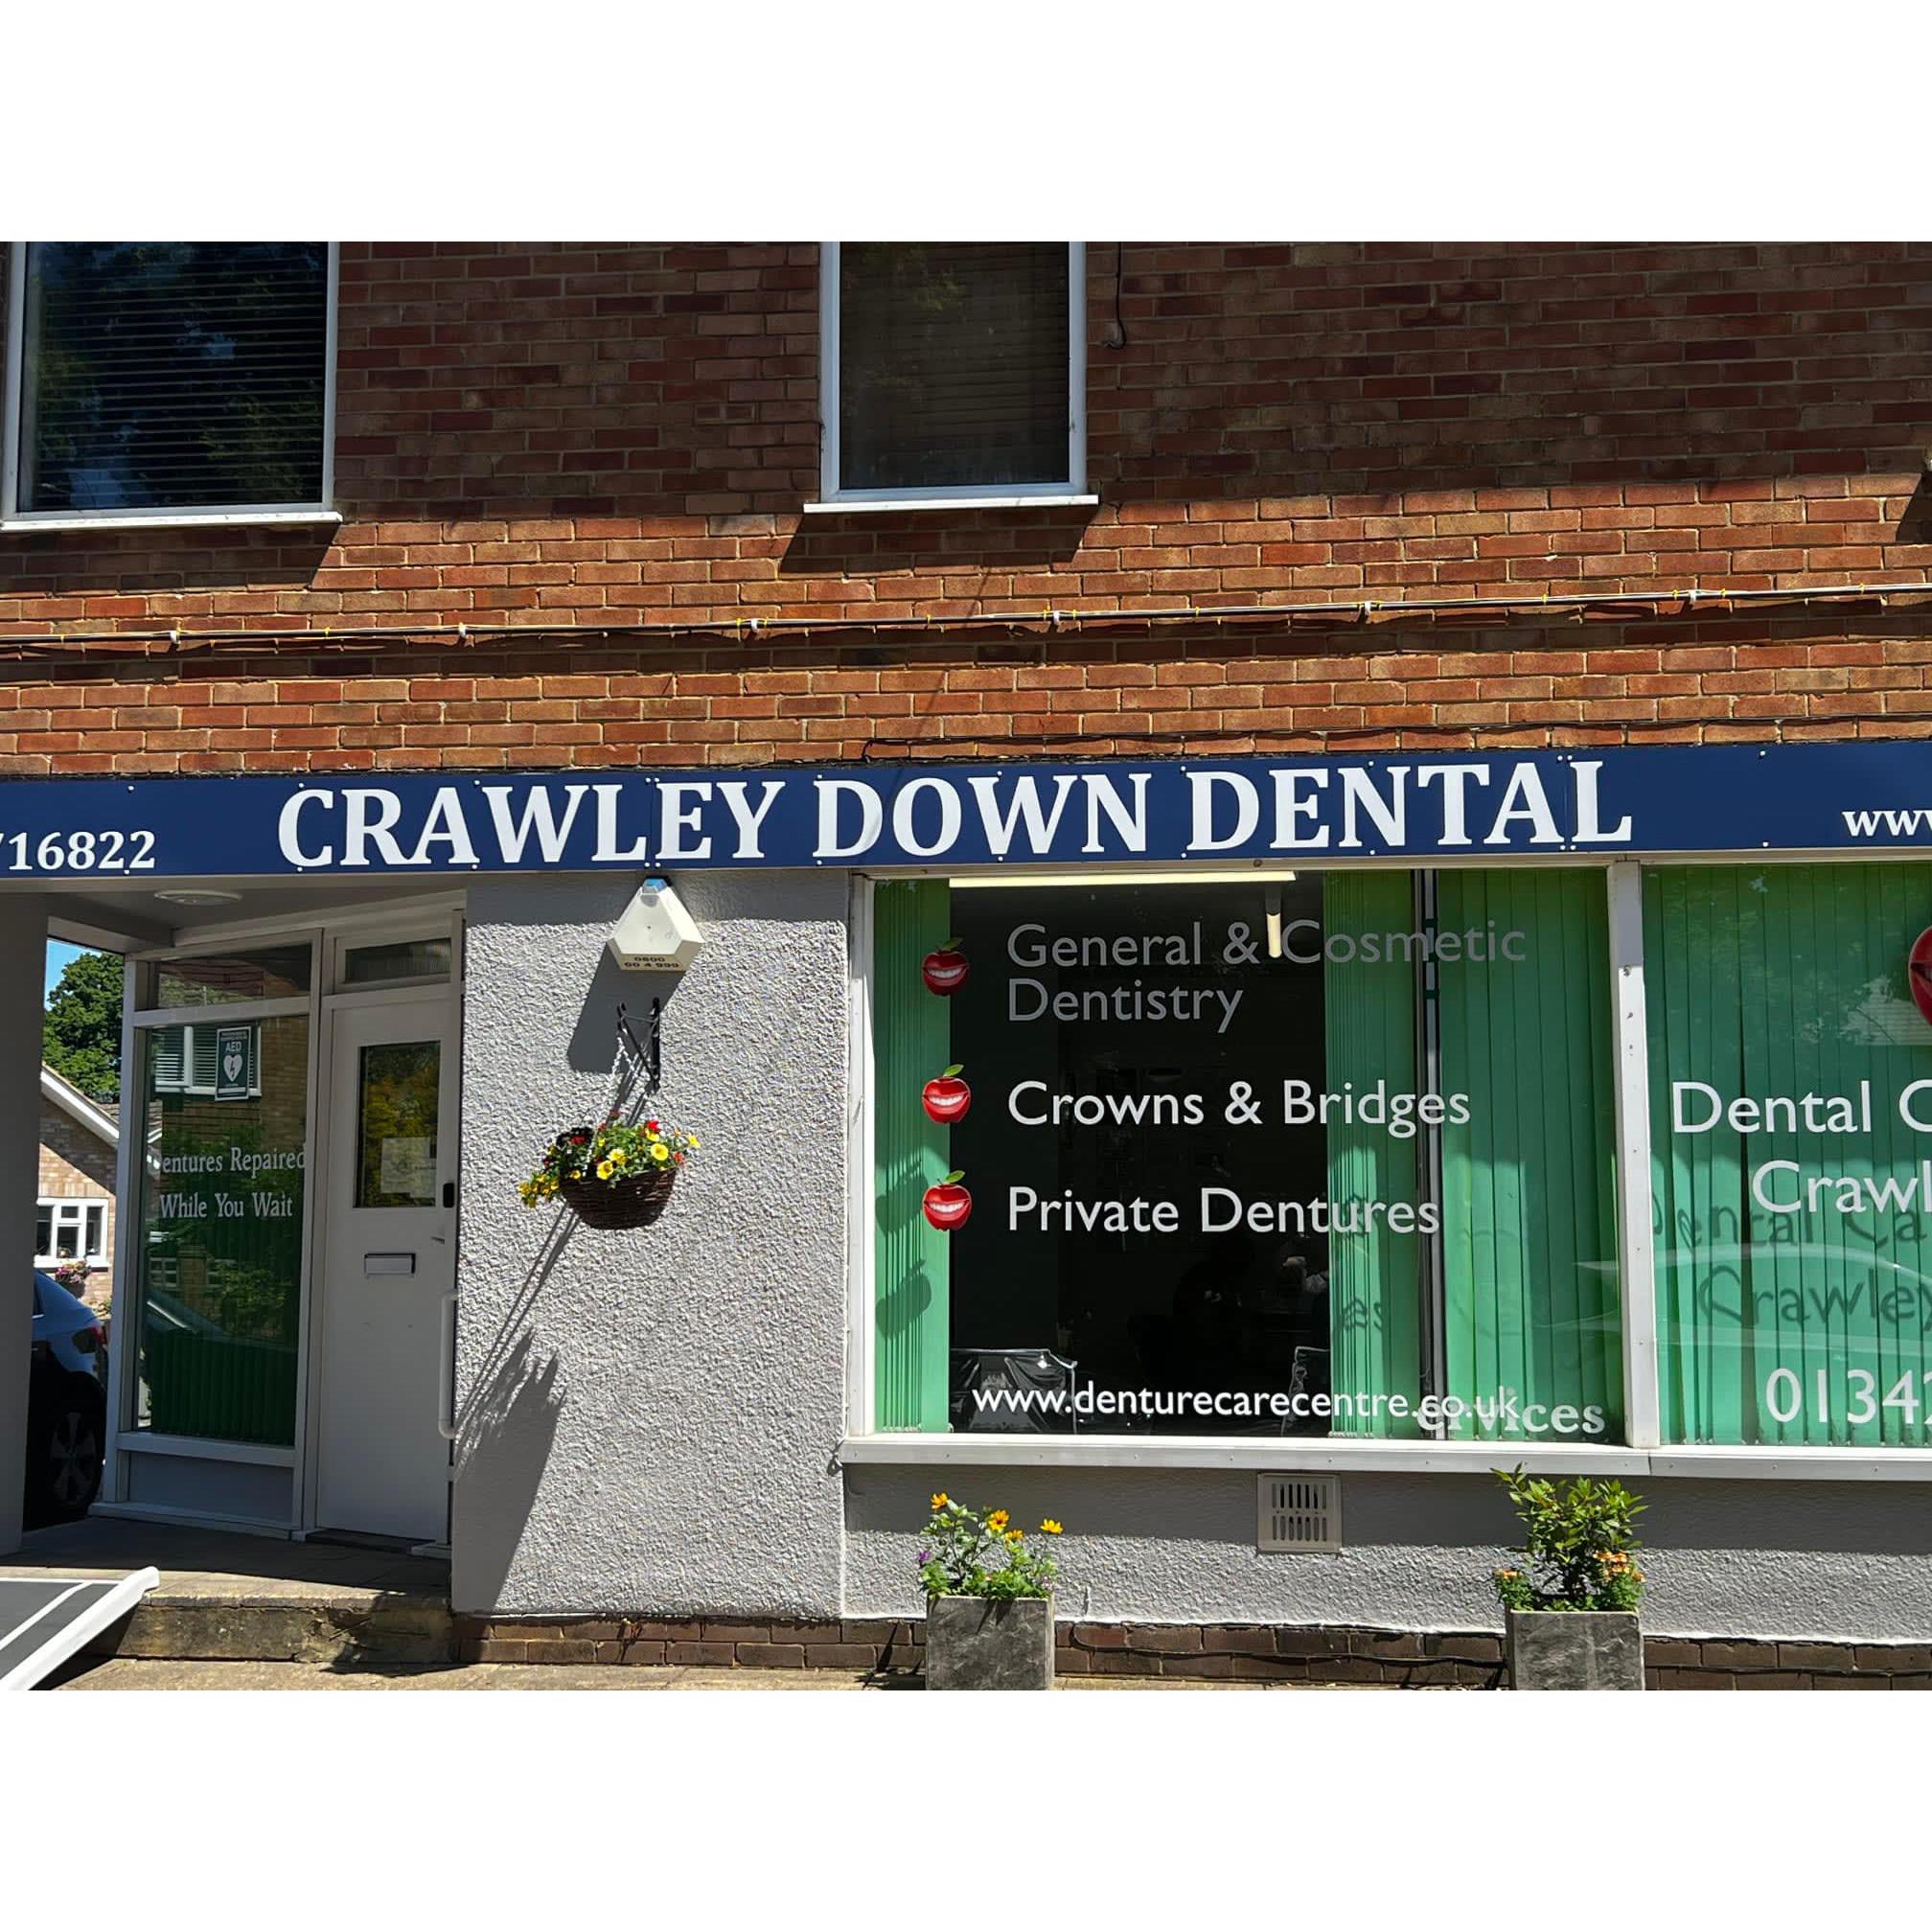 Crawley Down Dental Ltd - Crawley, West Sussex RH10 4HE - 01342 716822 | ShowMeLocal.com